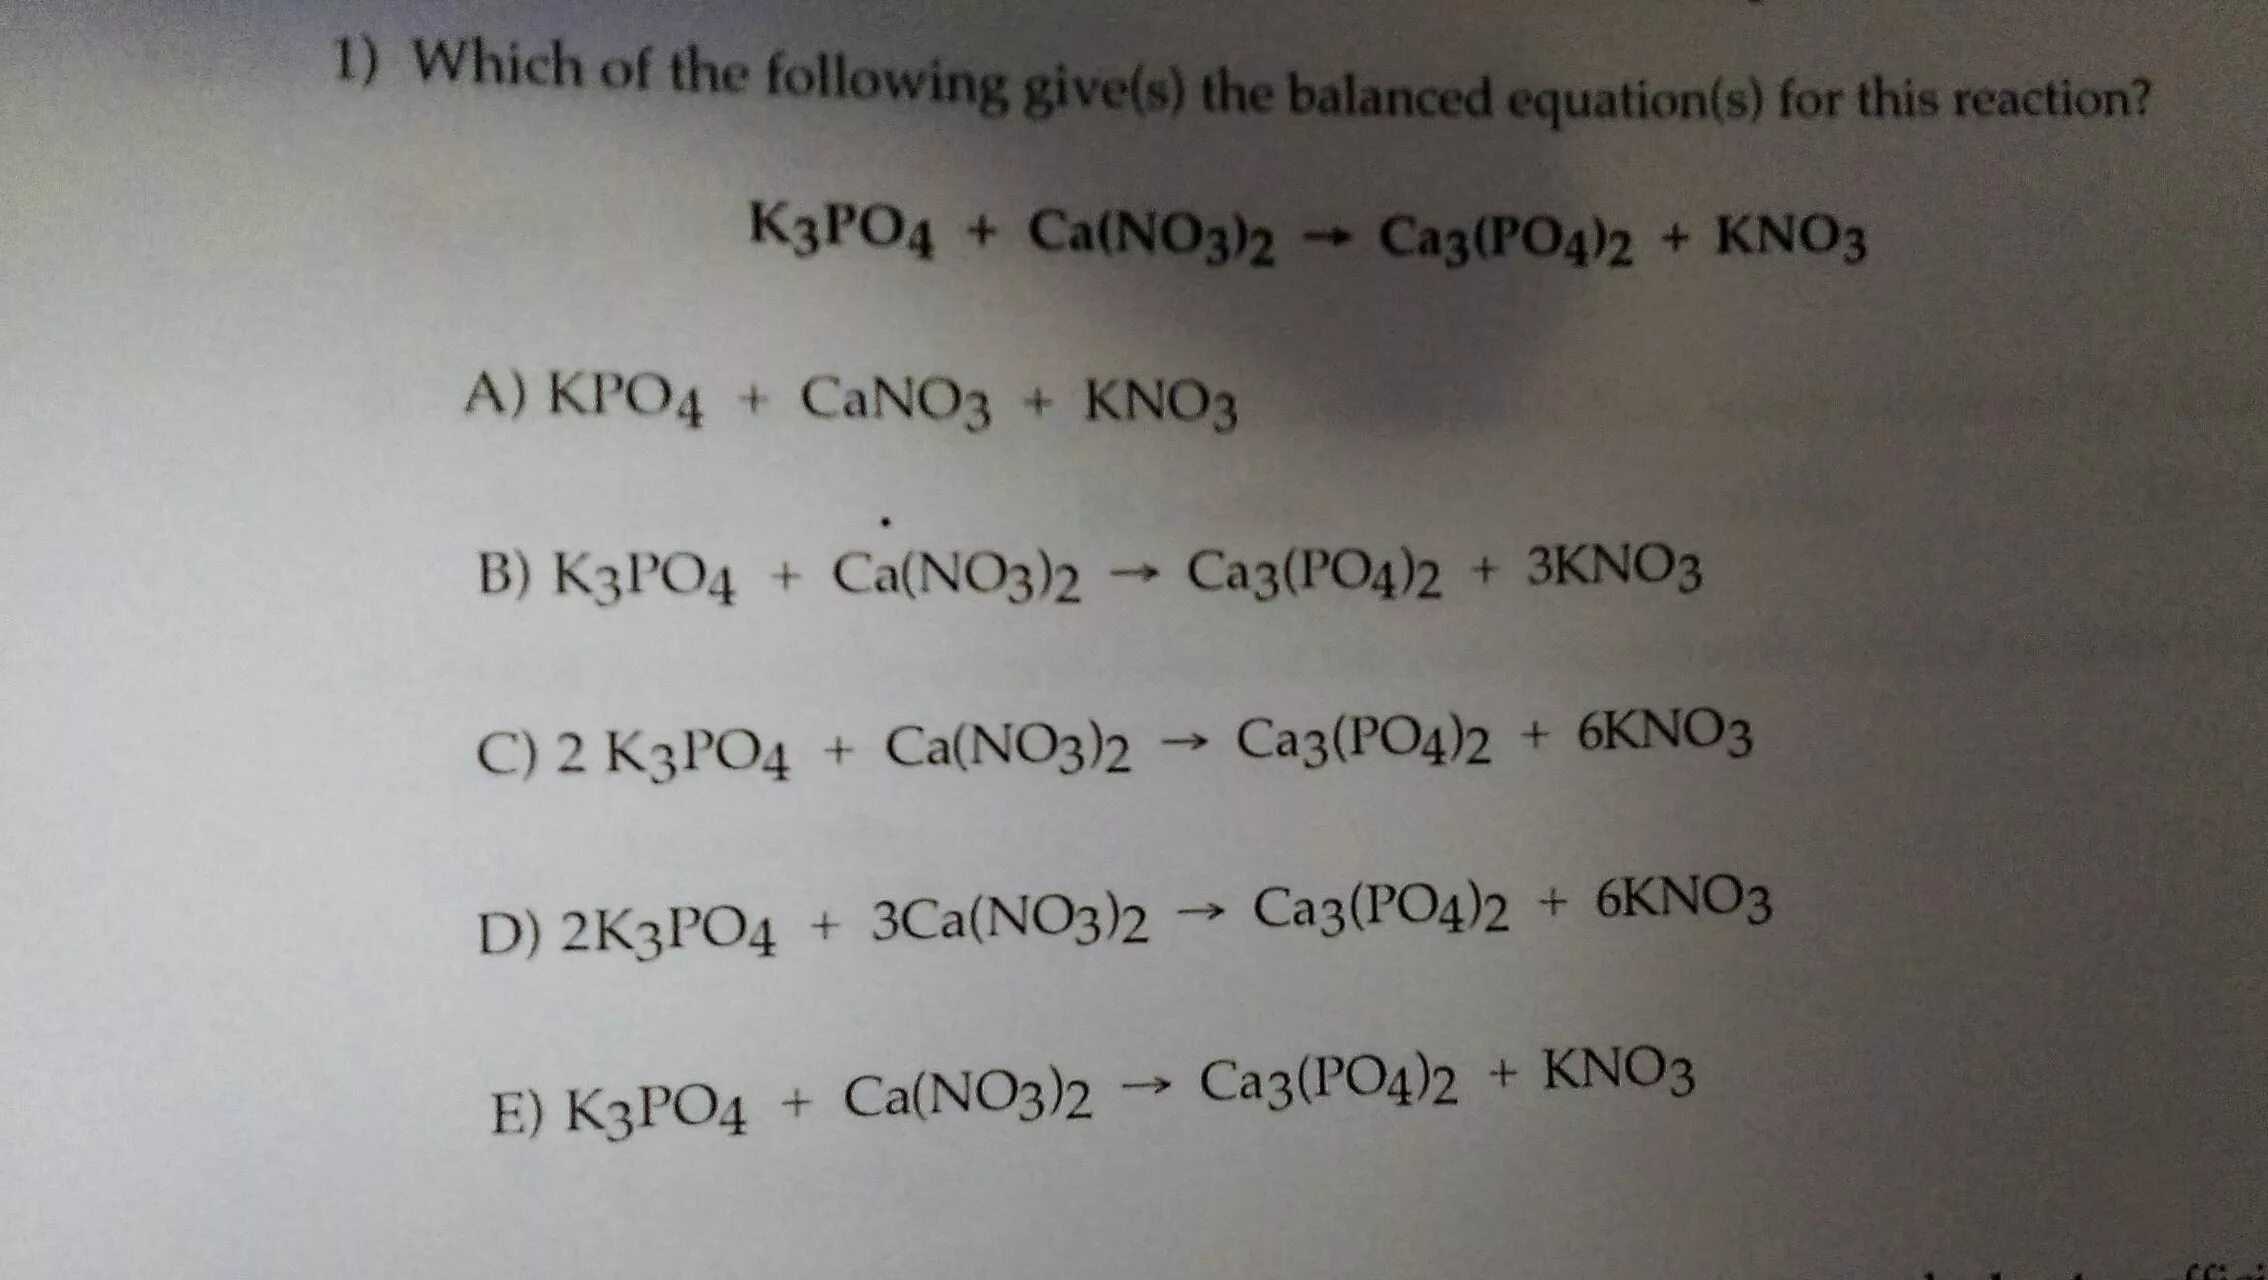 Kpo4. K3po4 kno3. Kpo4 название. 3ca(no3)2 + 2kpo4 = kno3 + ca3(po4)2.